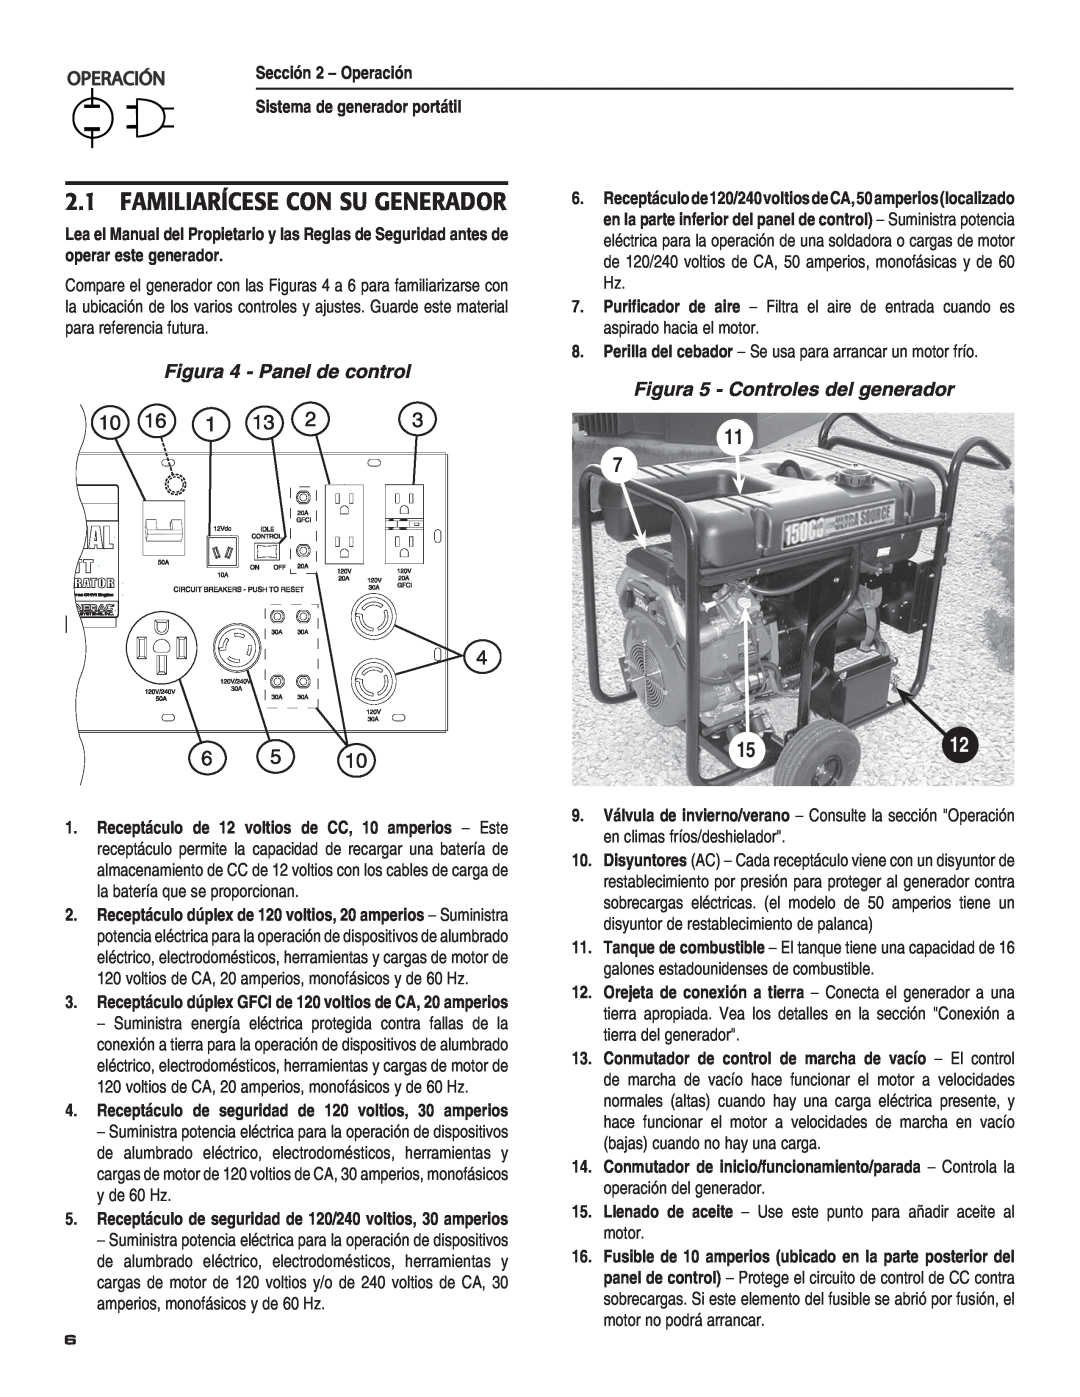 Guardian Technologies 004583-0 owner manual Familiarícese Con Su Generador, 0%2!#œ, Figura 4 - Panel de control, 1512 